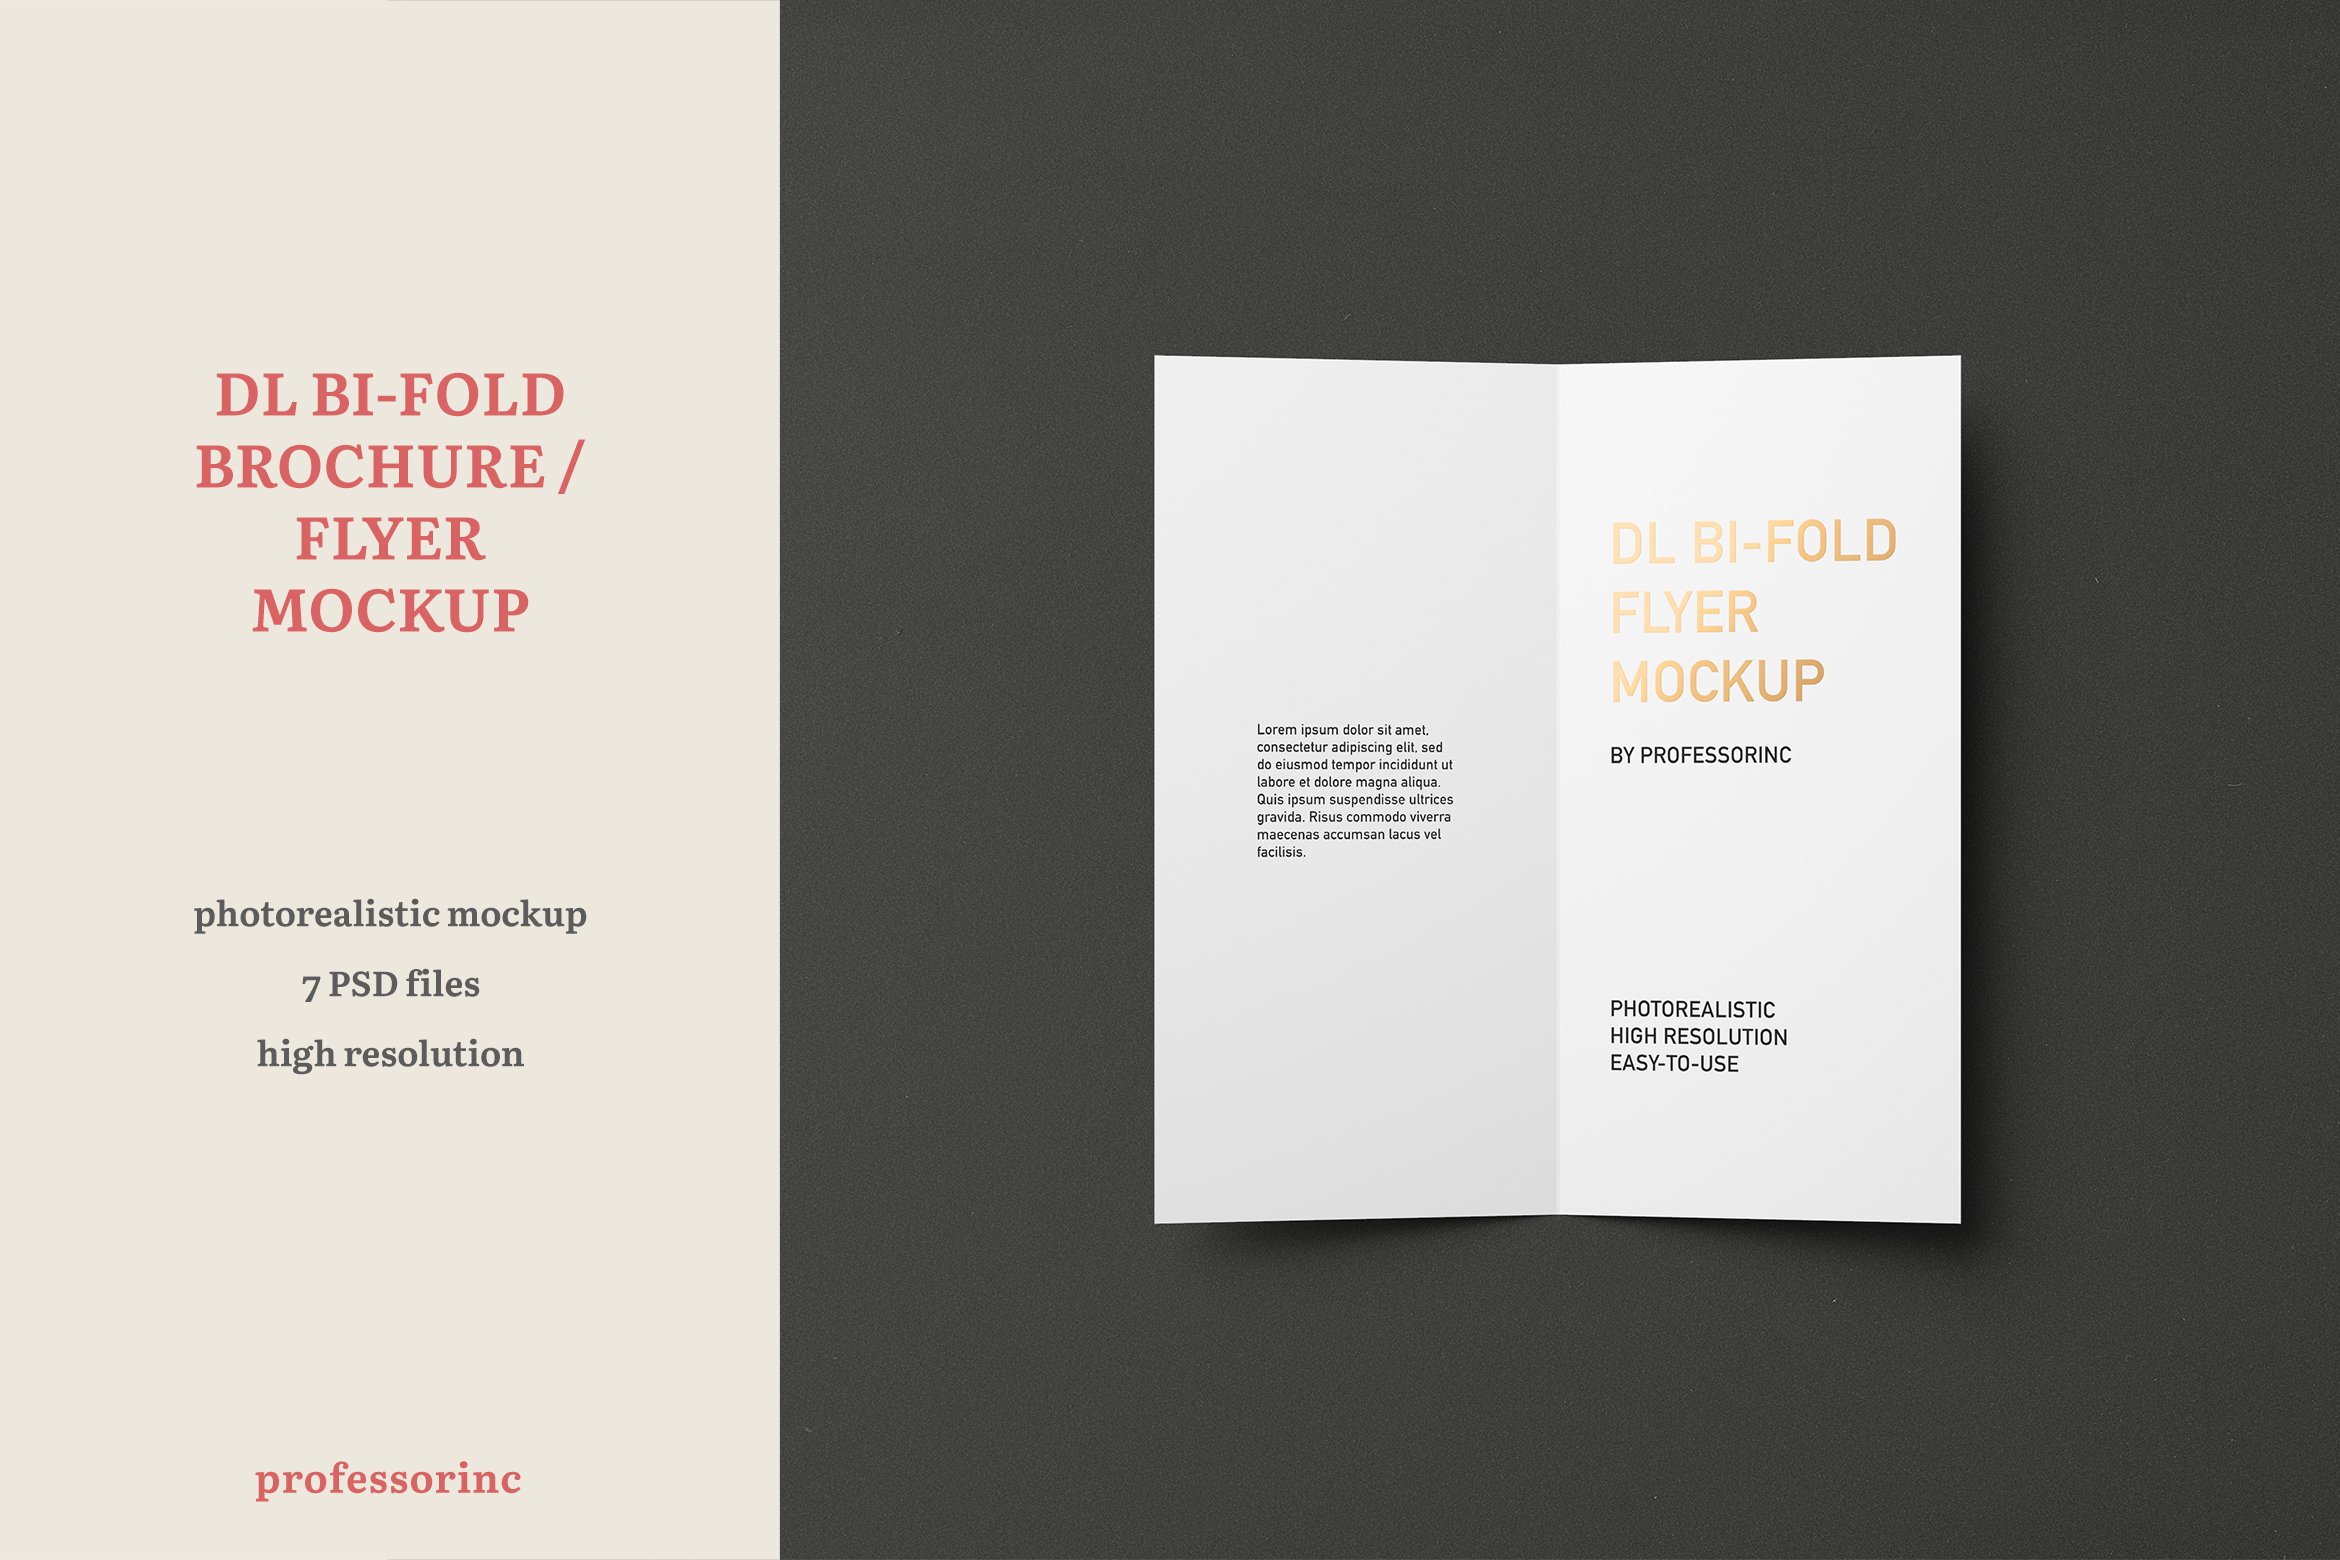 DL Bi-Fold Flyer / Brochure Mockup cover image.